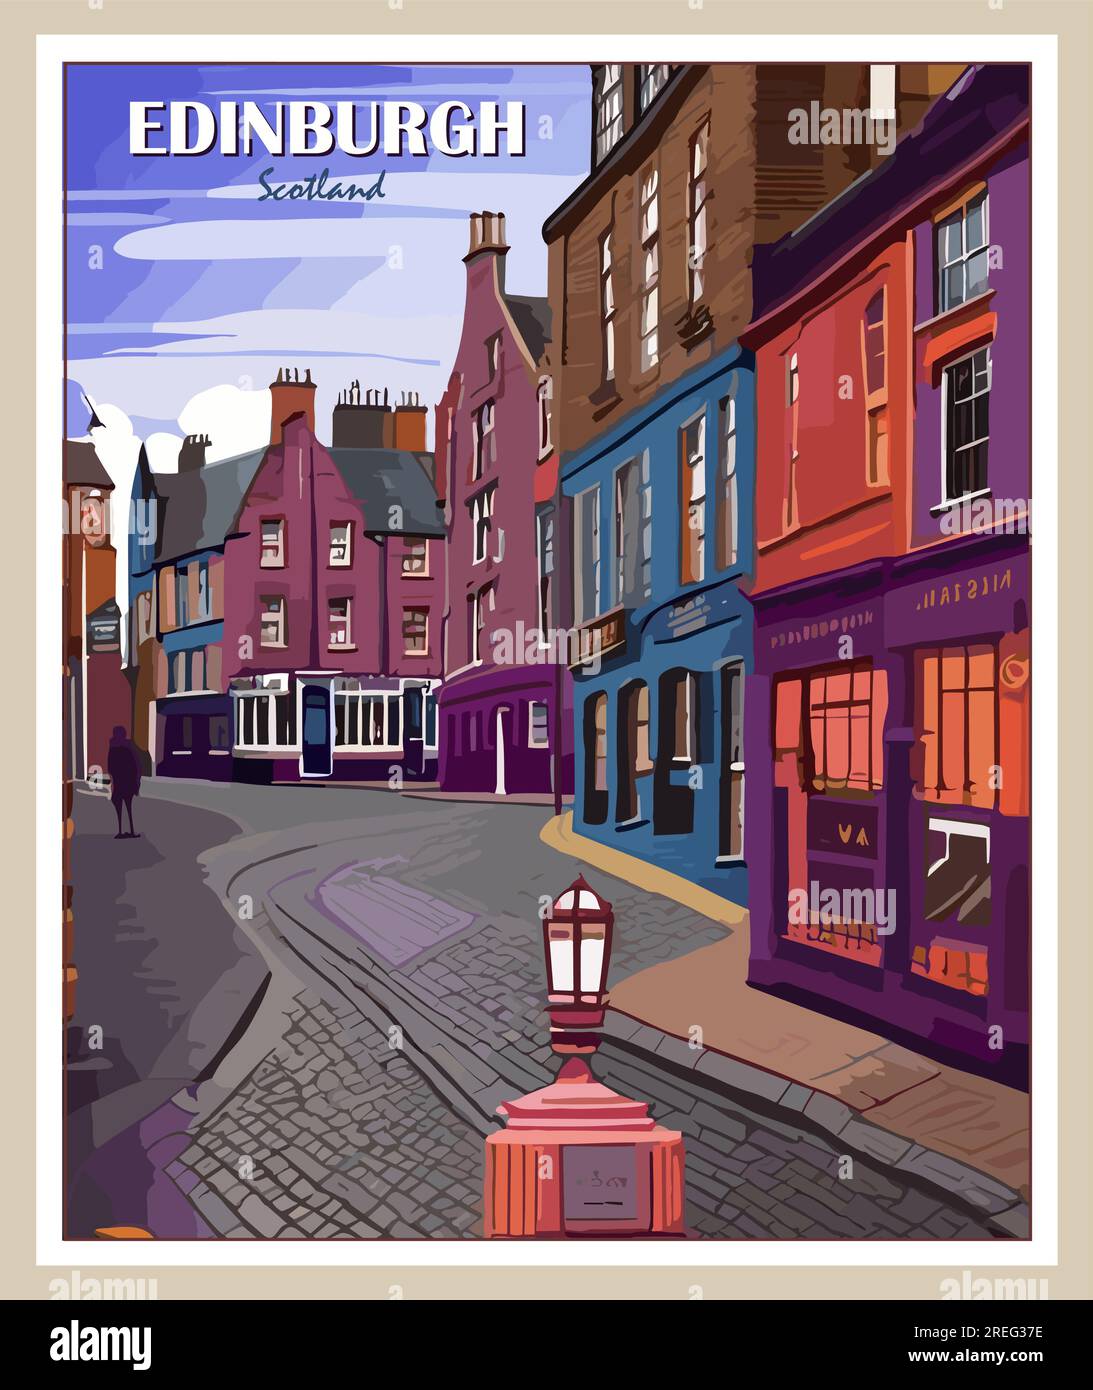 Edinburgh Scotland Travel poster retrò arte vettoriale. Illustrazione Vettoriale